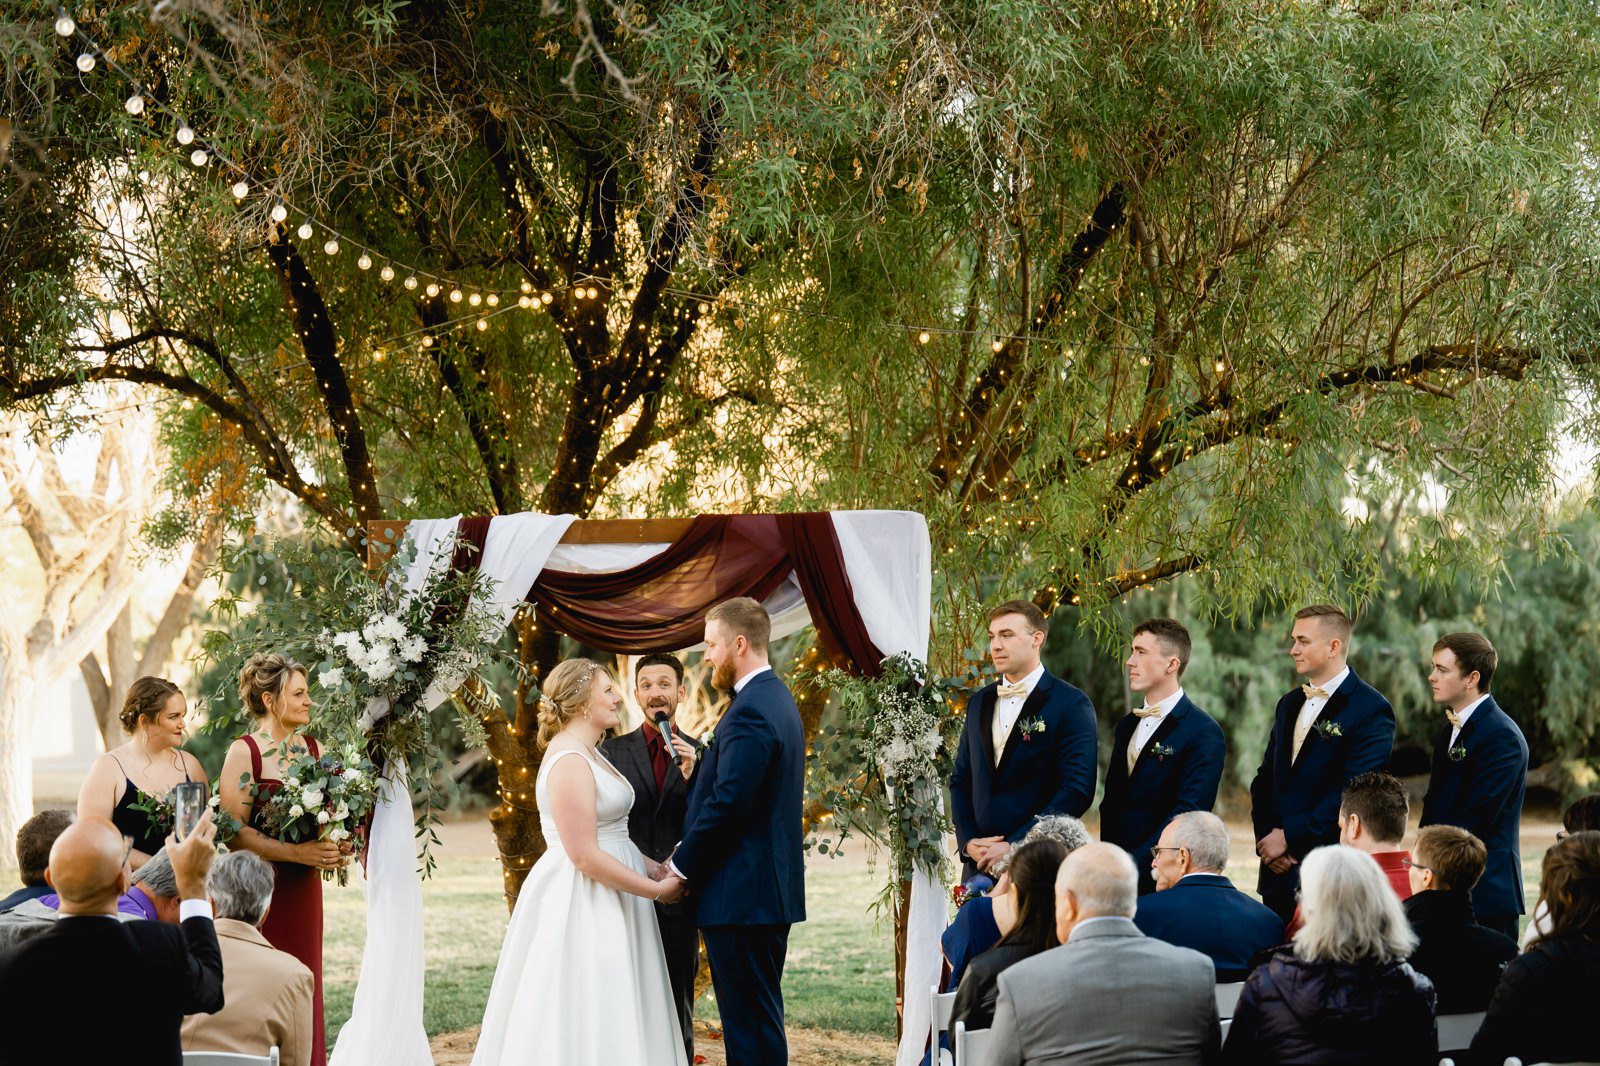 Wedding ceremony at the secret garden wedding venue in Las Vegas